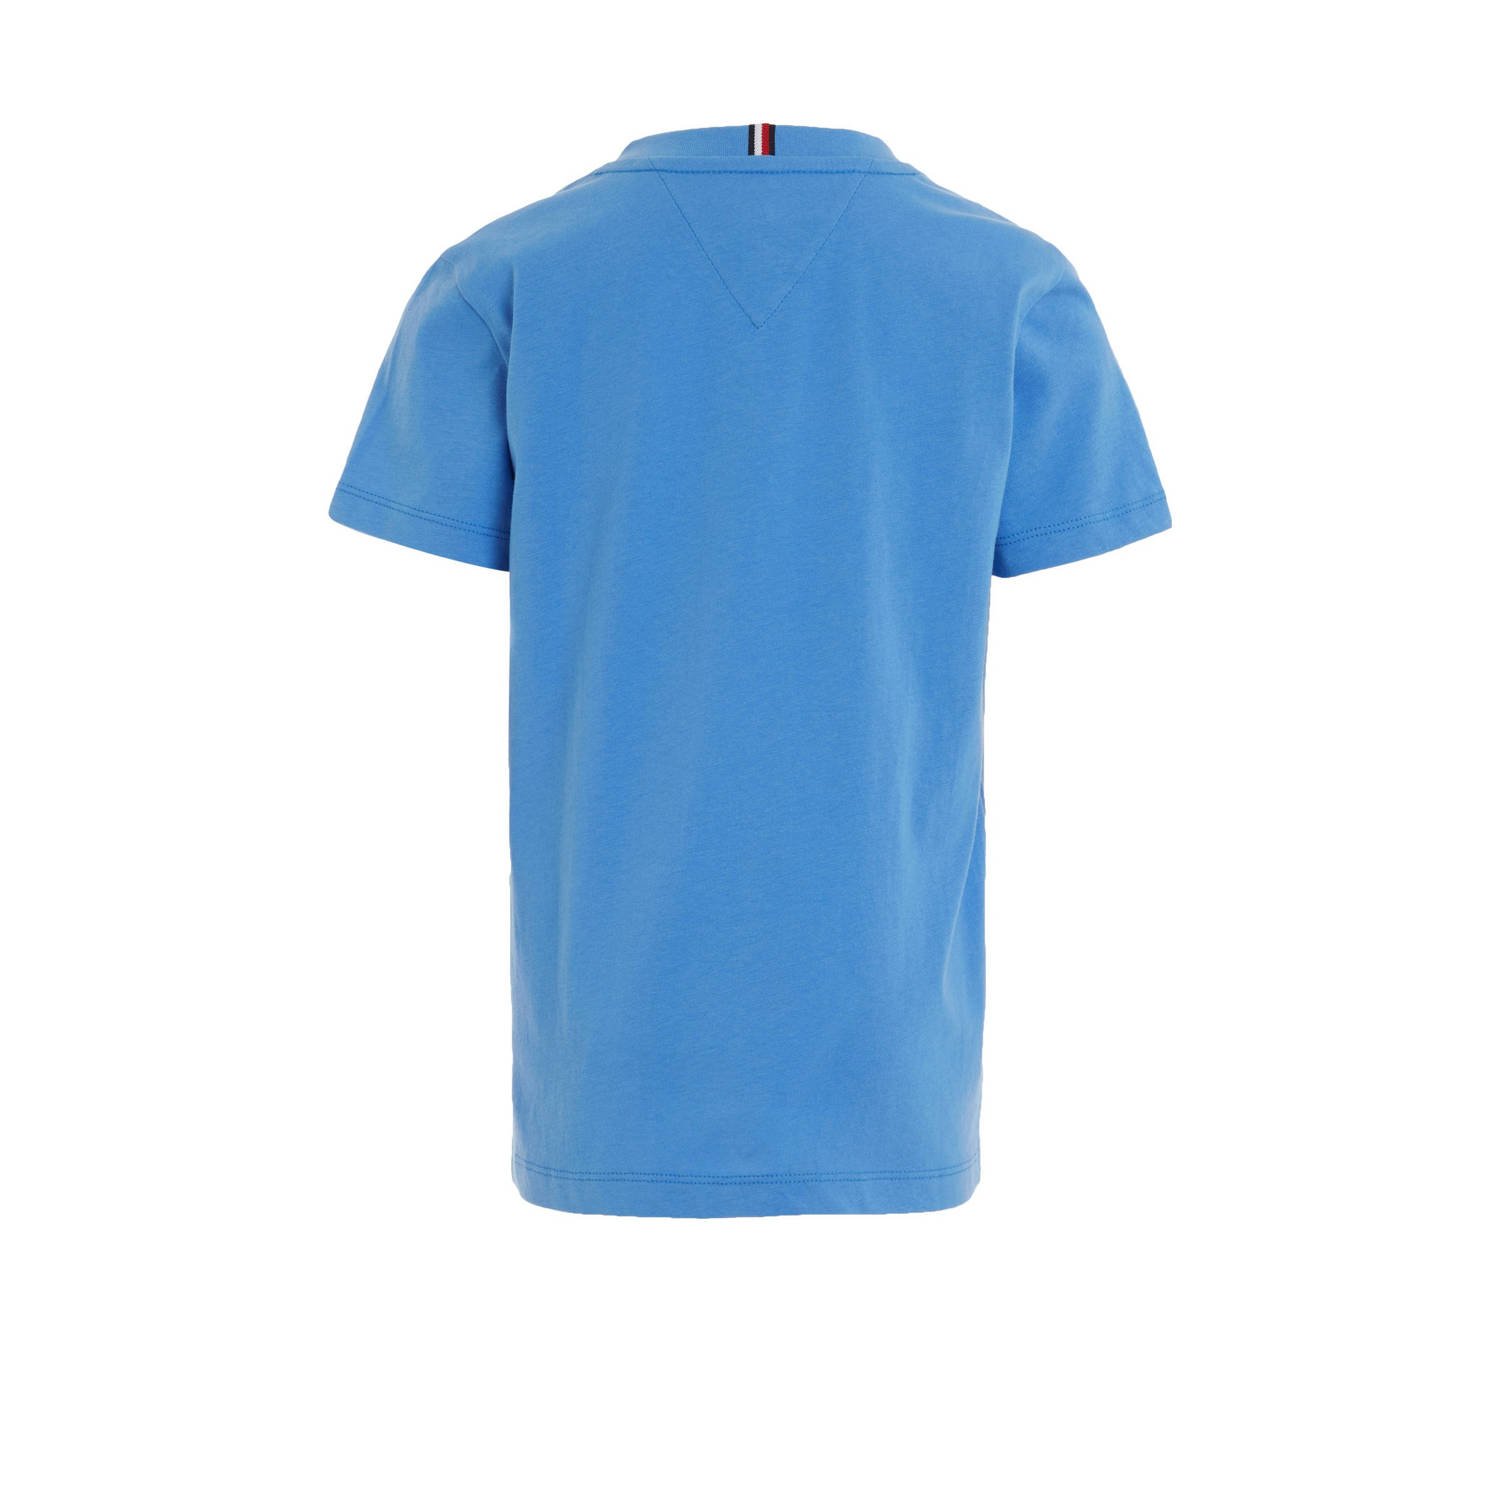 Tommy Hilfiger T-shirt met logo blauw